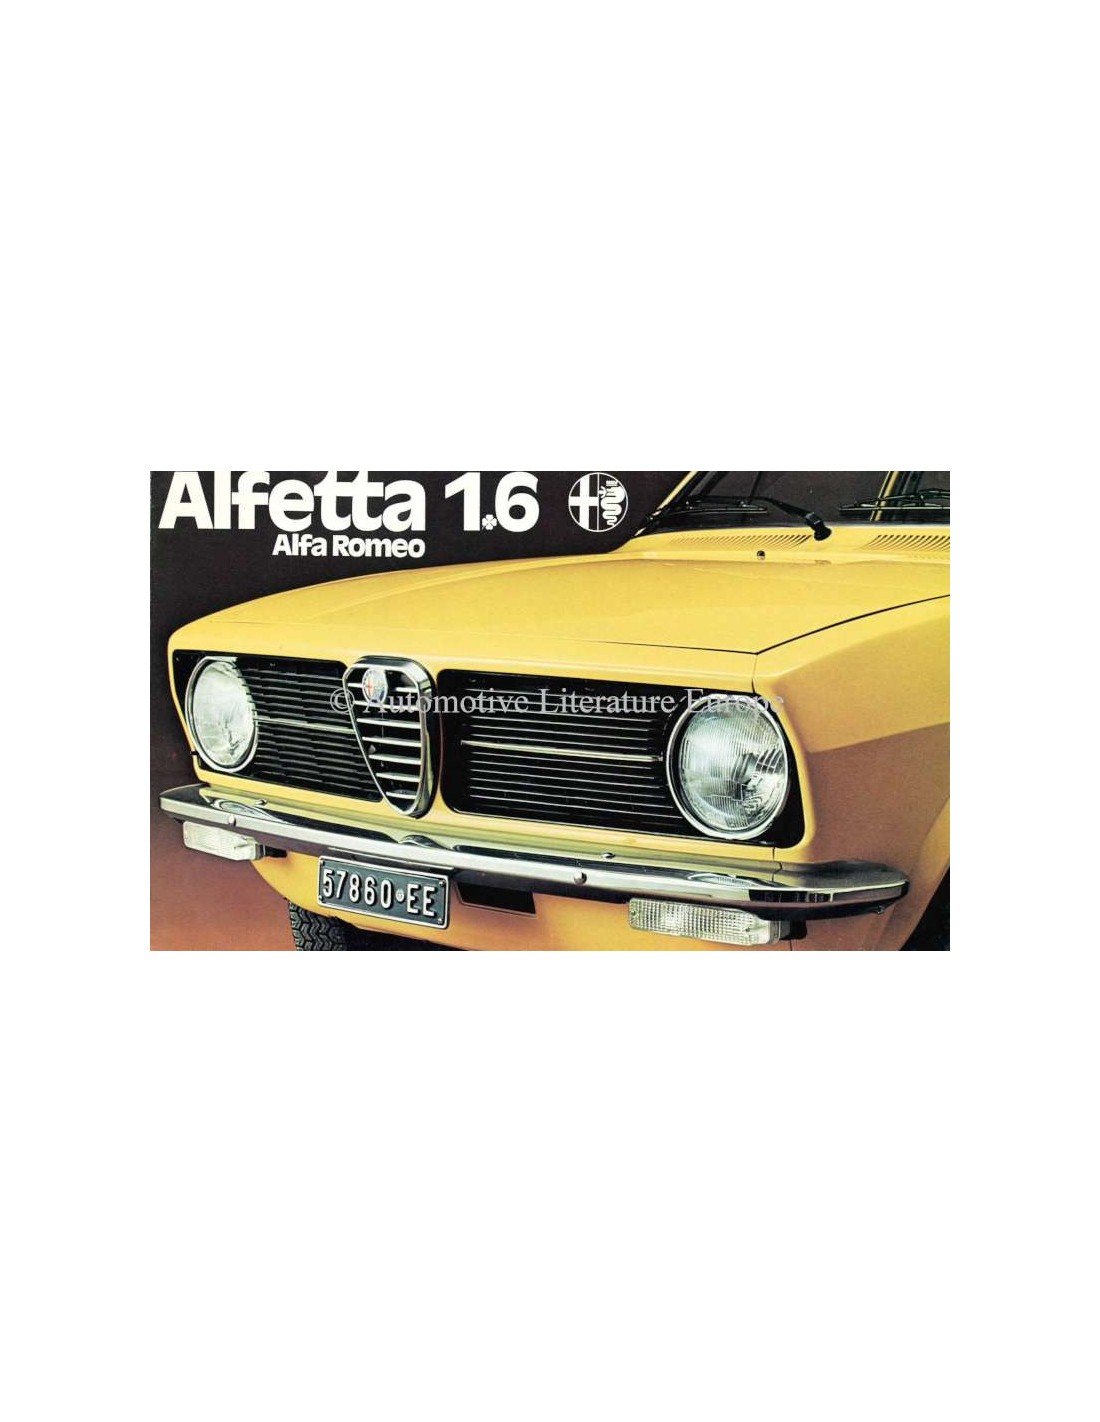 1975 Alfa Romeo Alfetta 1.6 Brochure Dutch